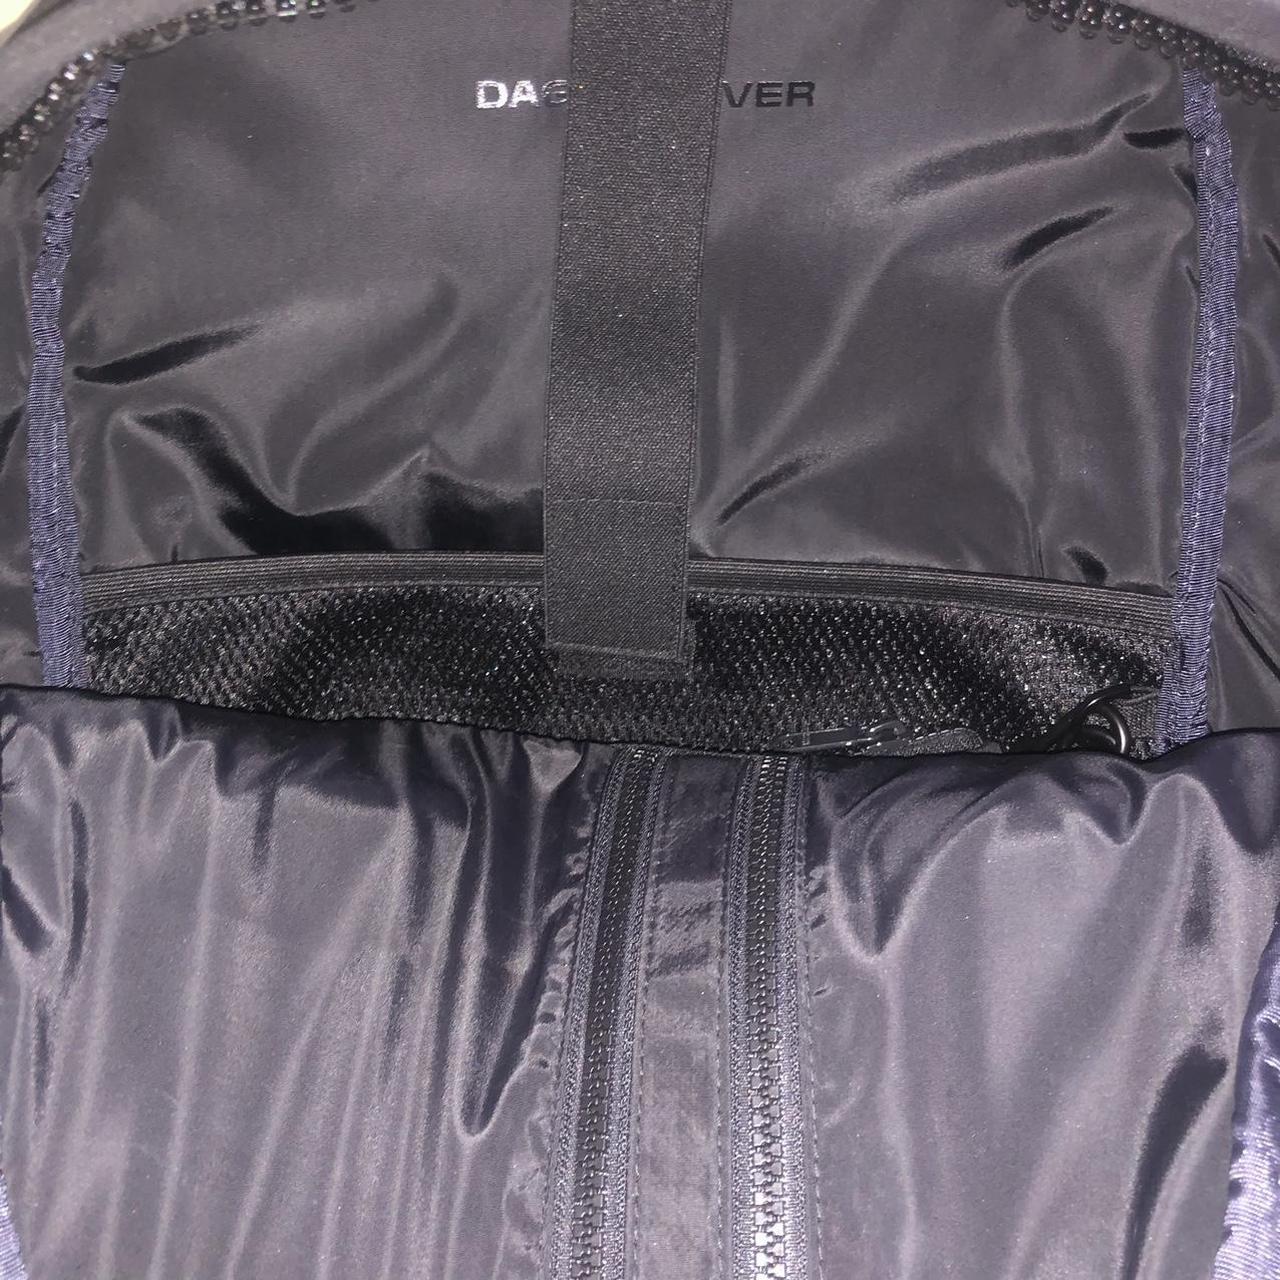 Dagne Dover Dakota neoprene backpack with pouch - Depop